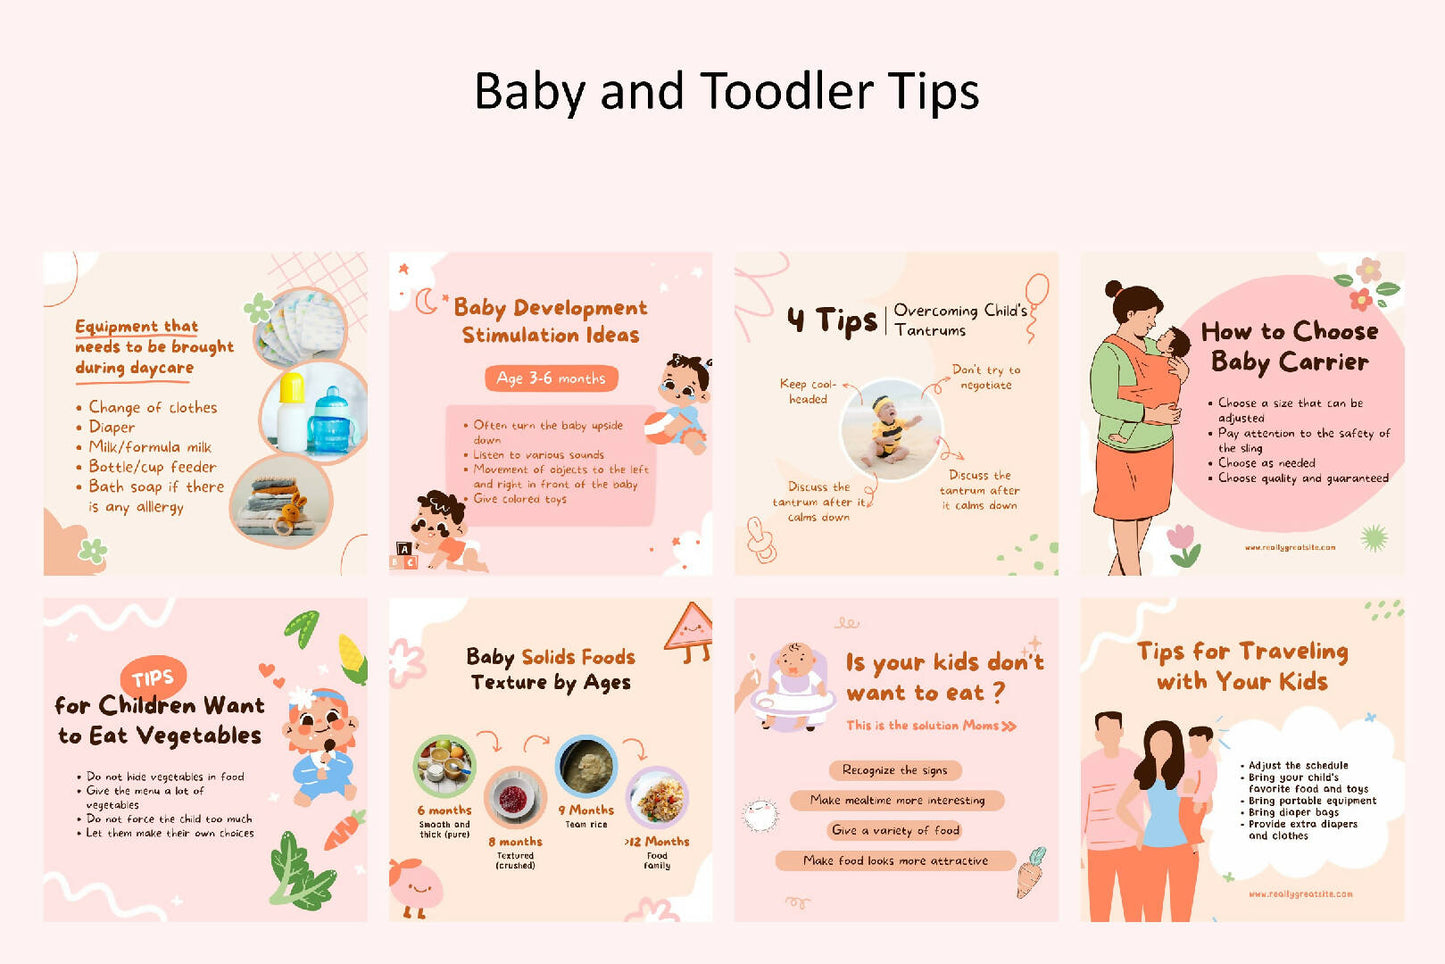 365 Days BUNDLE - Baby & Kids Theme - Instagram Post & Story